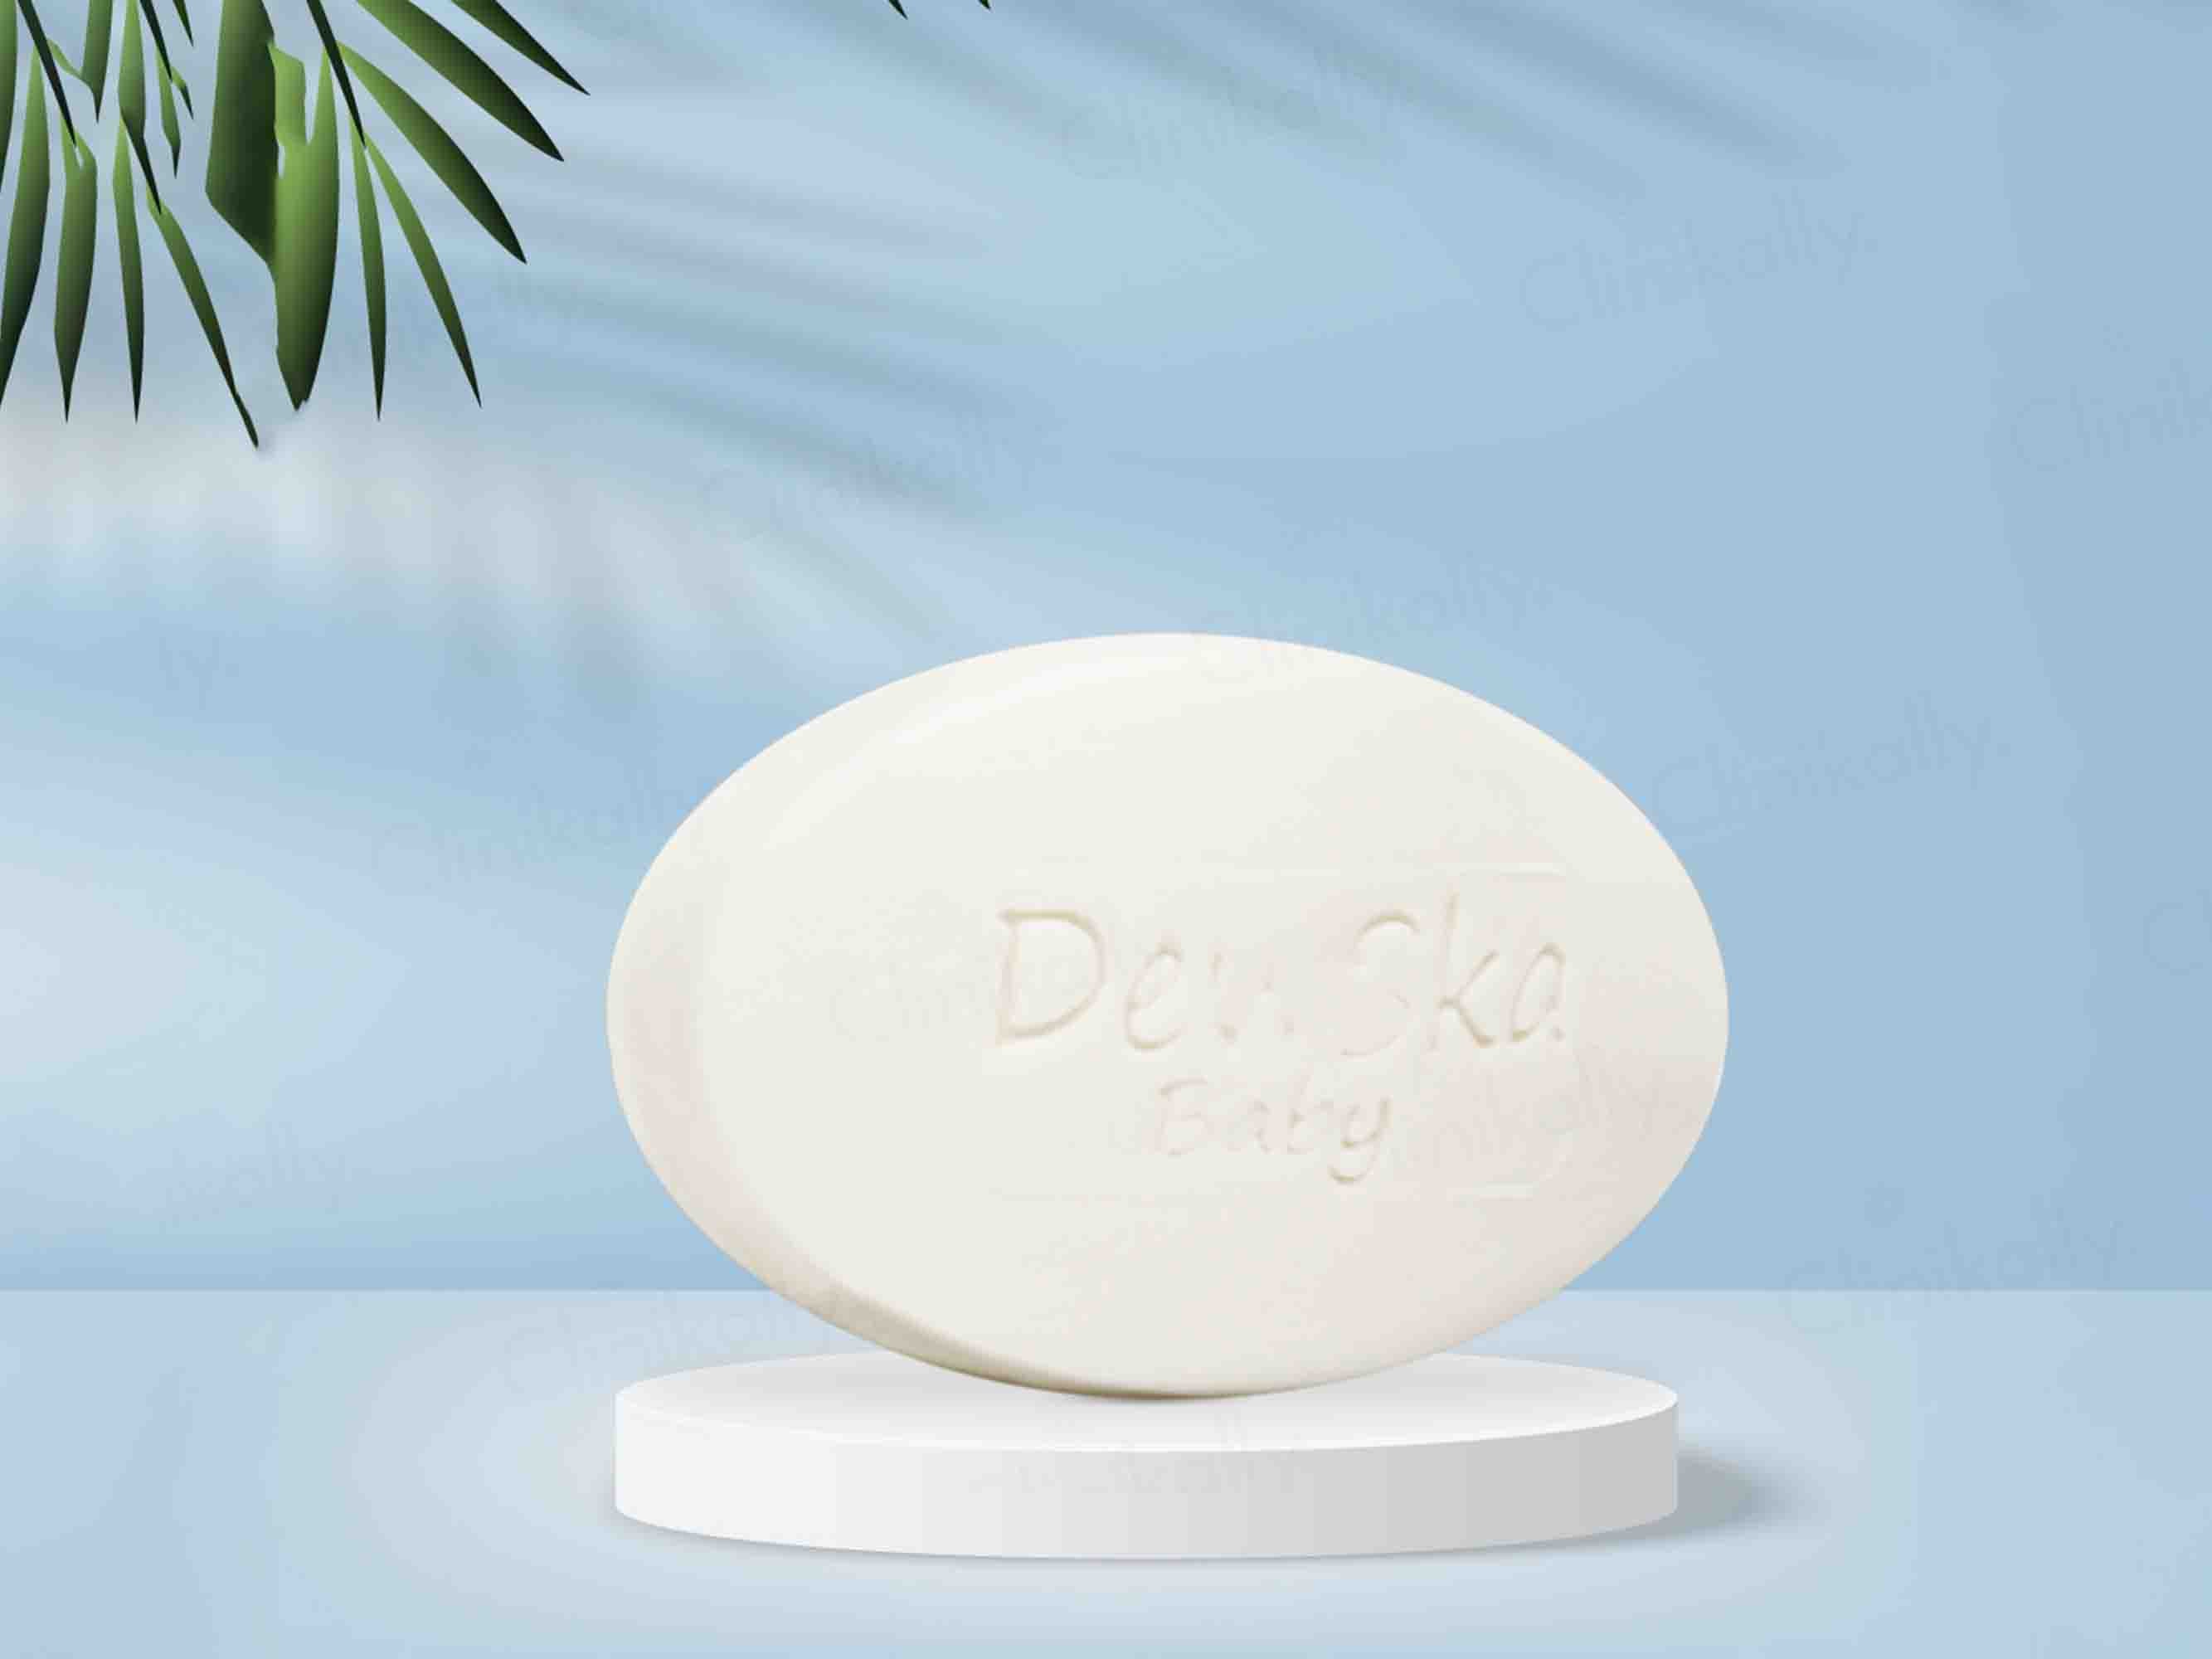 DewSka Baby Soap - Clinikally